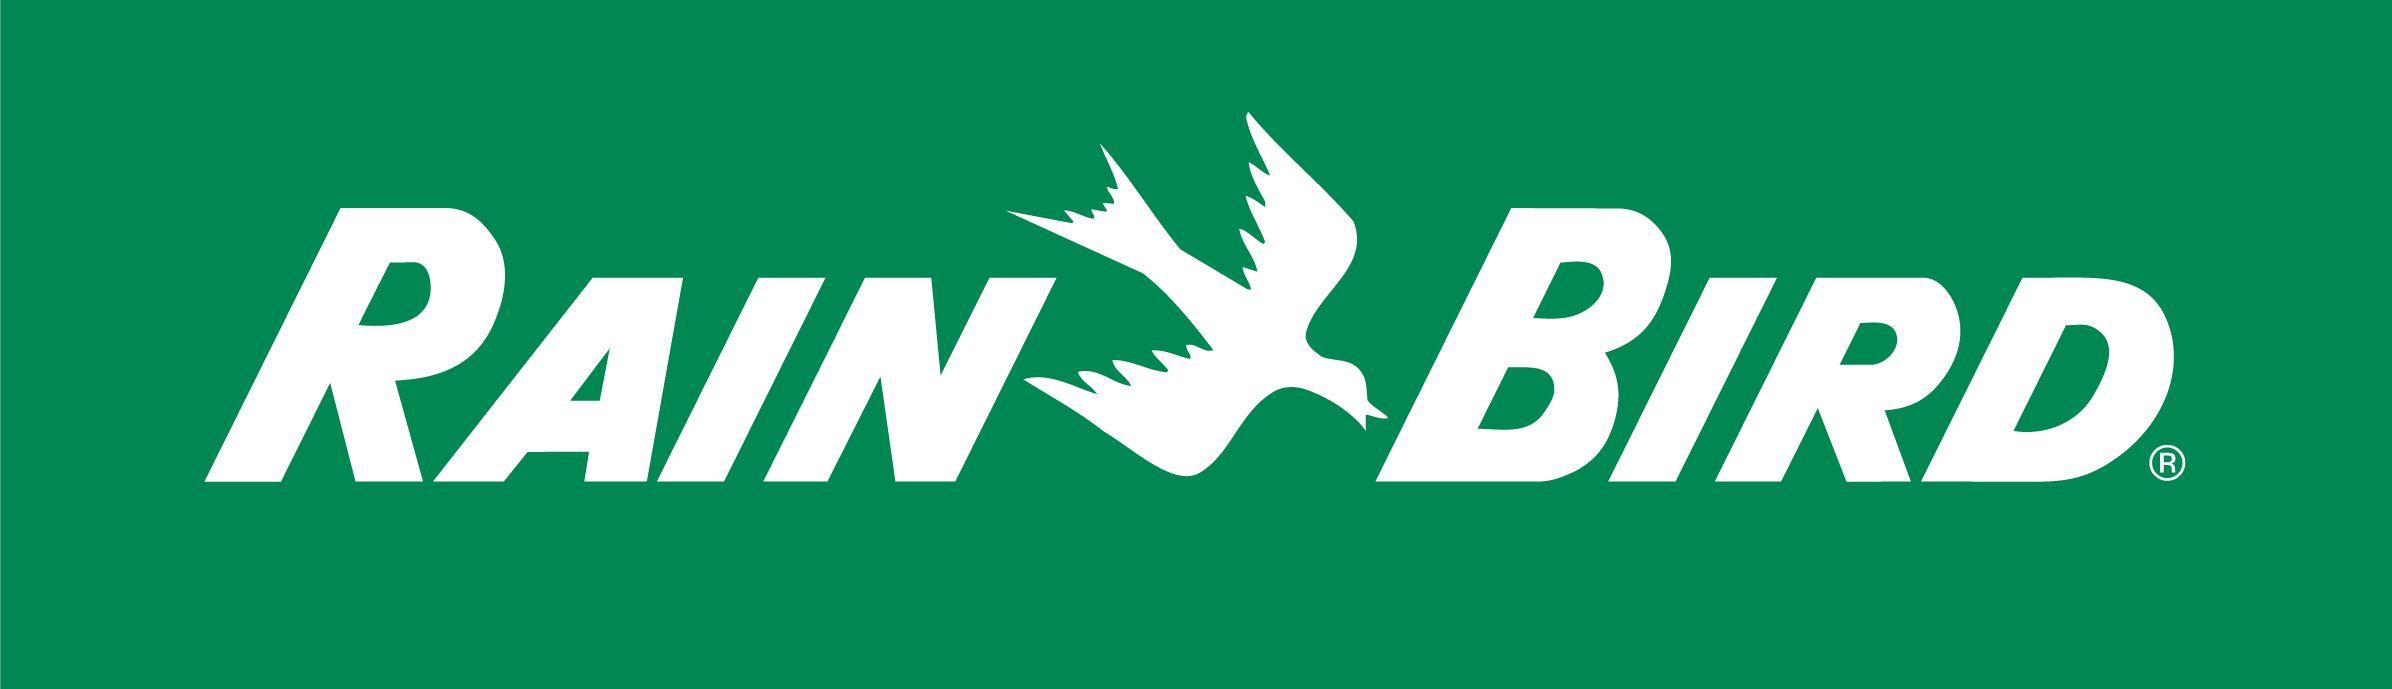 More Birds Logo - Rain Bird Logo